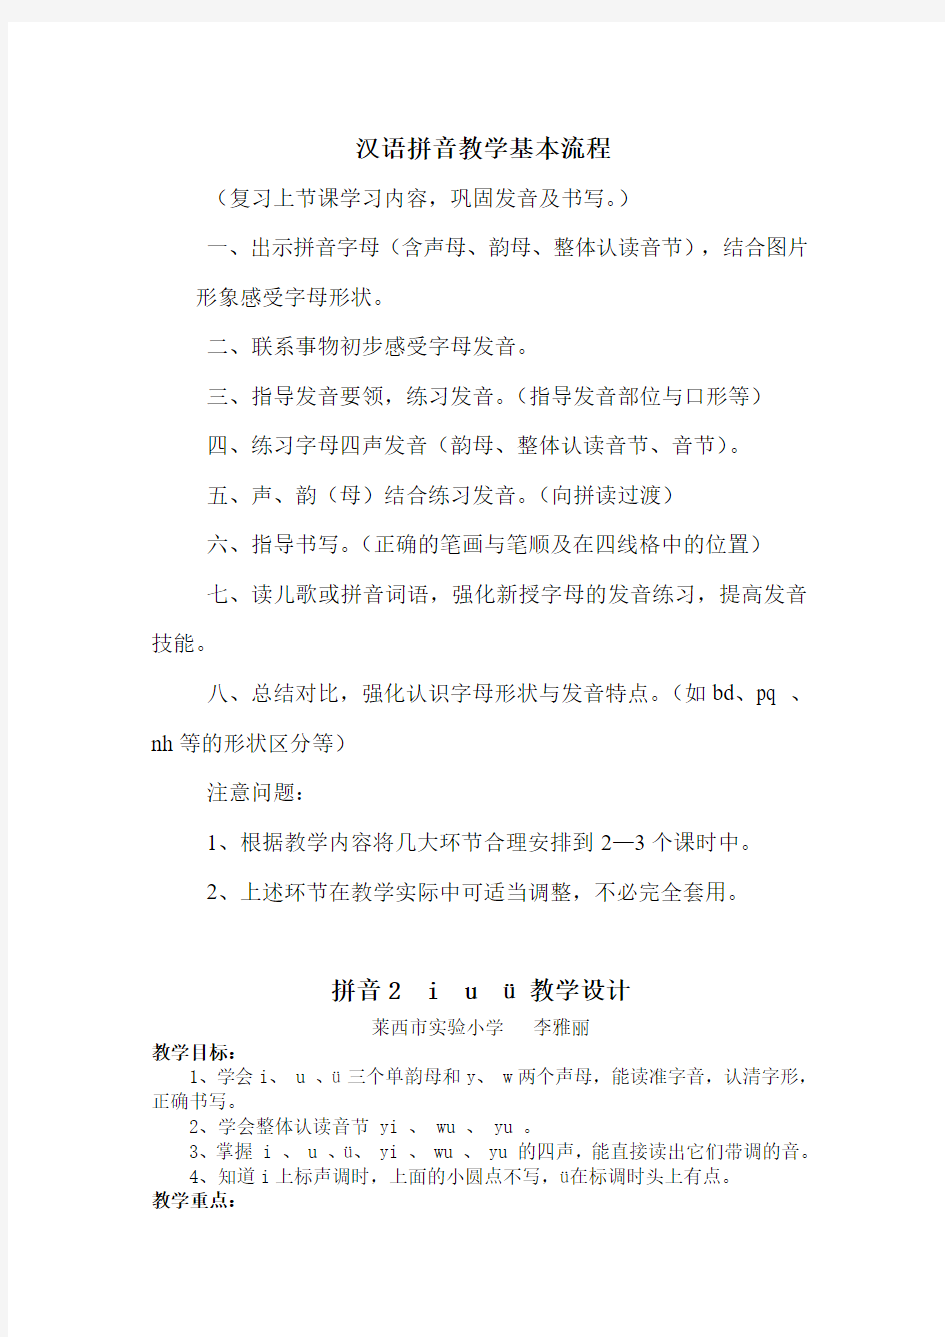 汉语拼音教学基本流程及教学设计